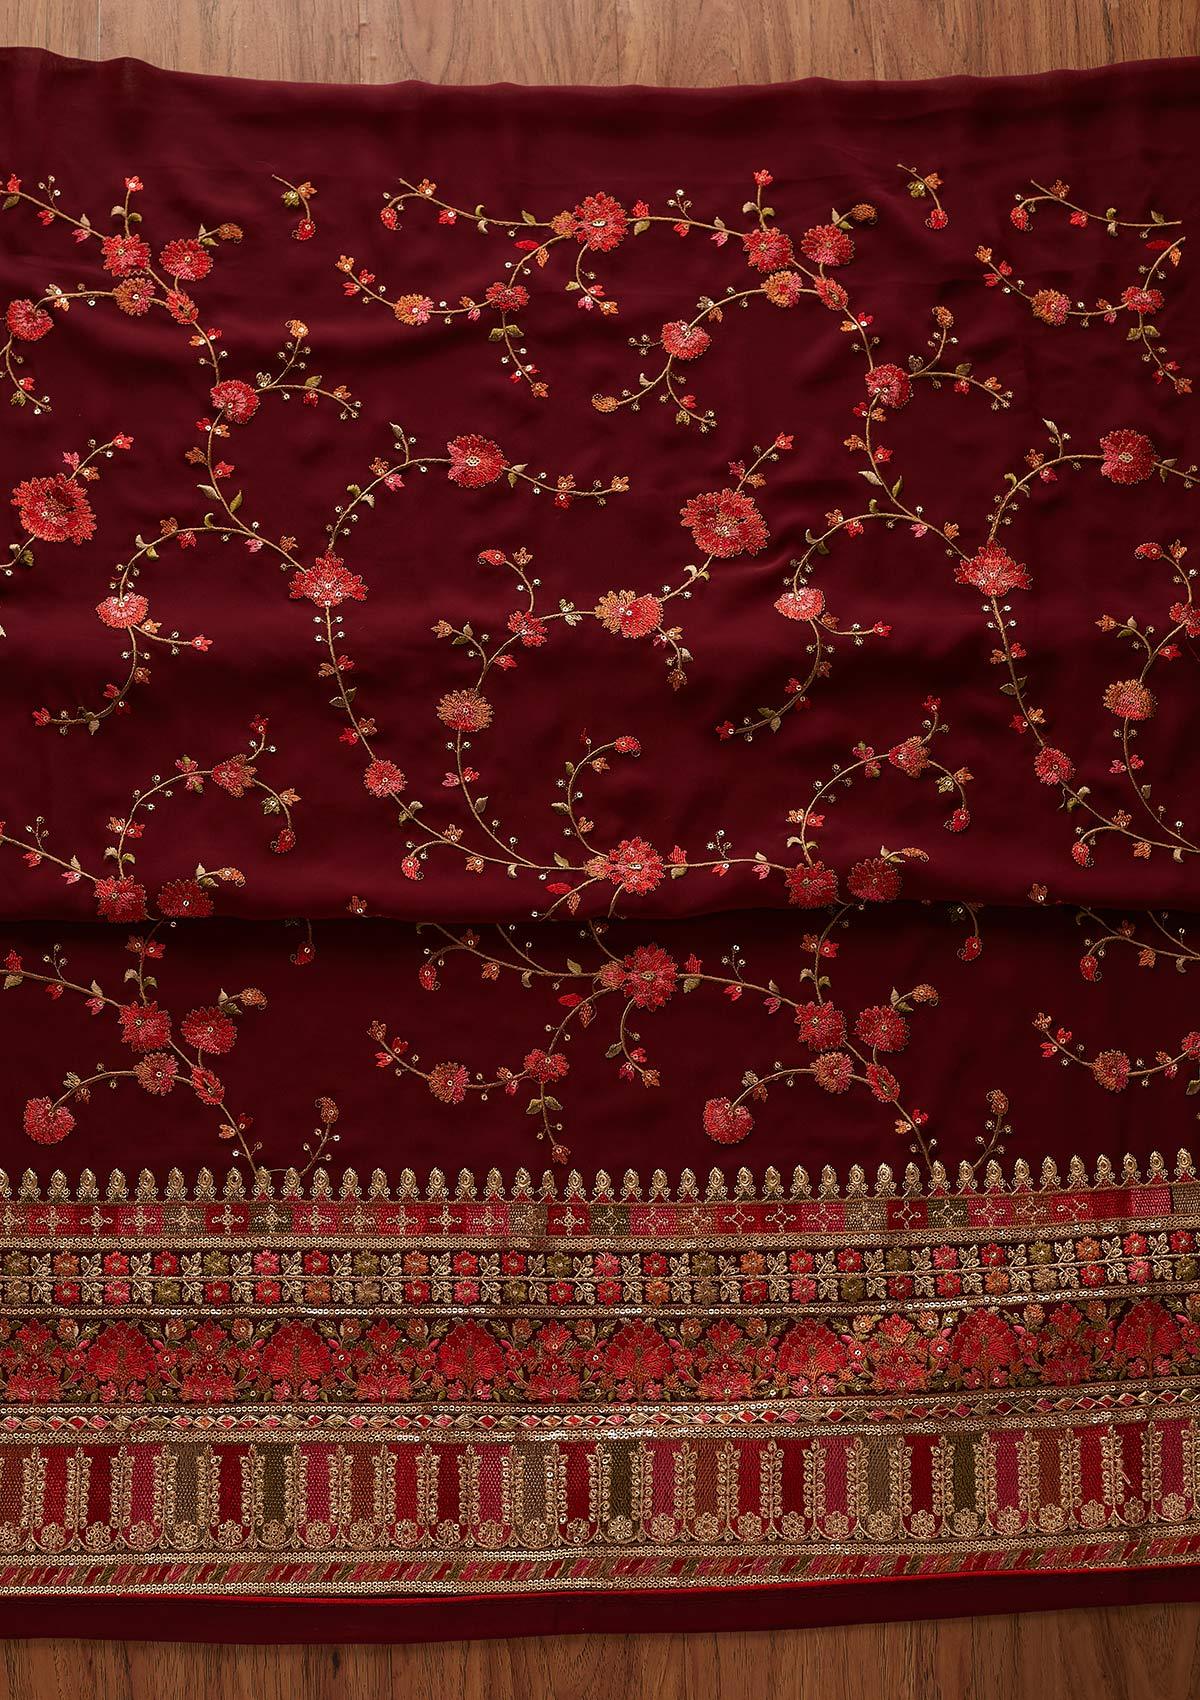 Maroon Threadwork Georgette Designer Unstitched Salwar Suit - koskii